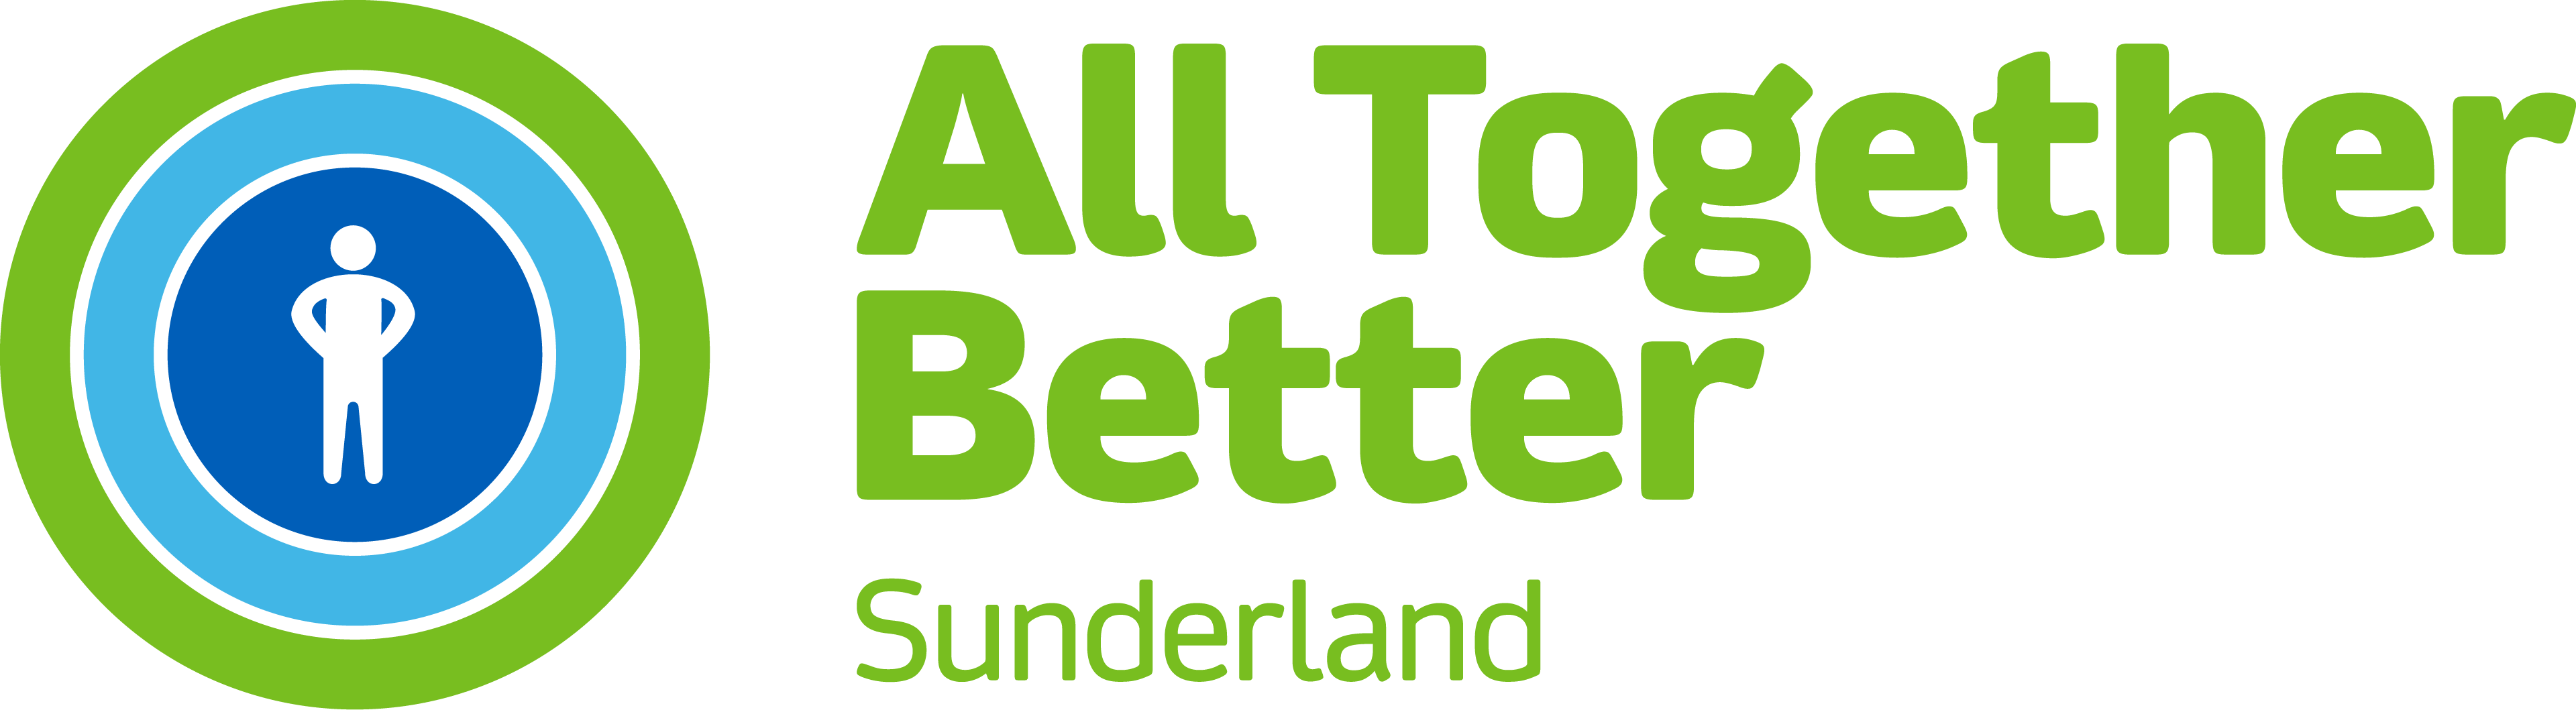 All Together Better - Sunderland GP Alliance